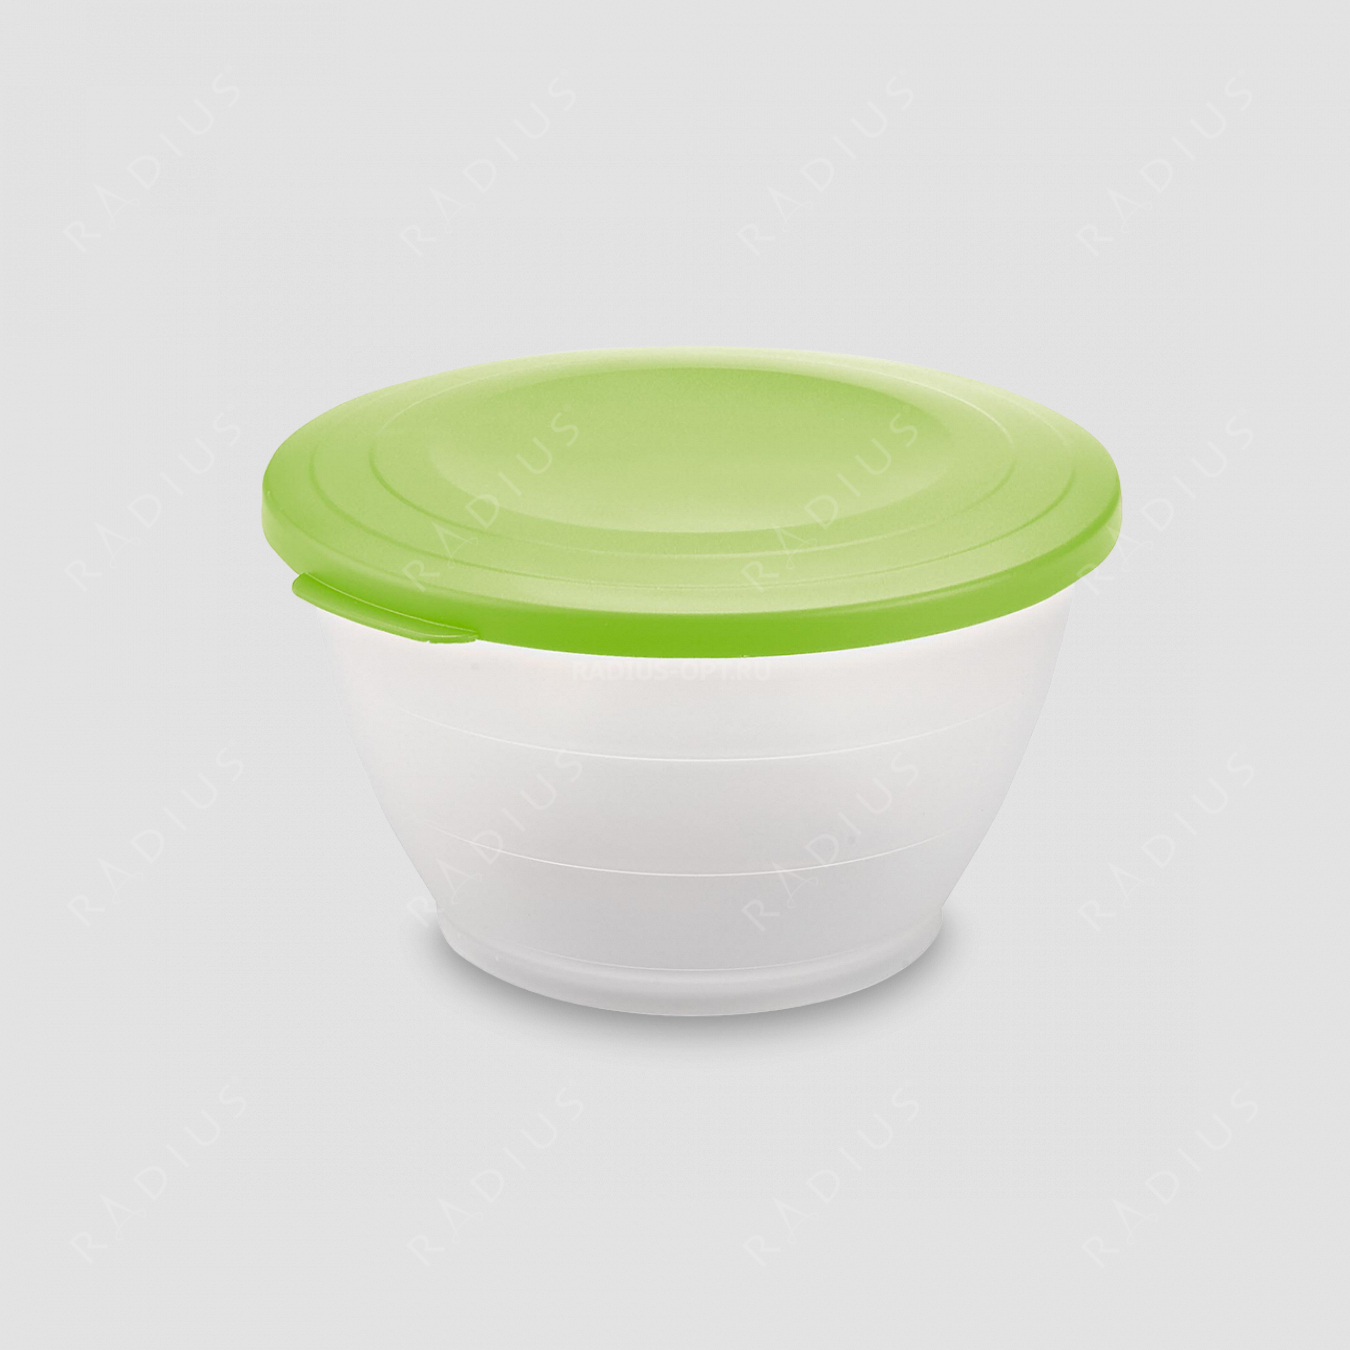 Емкость для салата с крышкой, объем 4,3 л, диаметр 25.5 см, цвет - зеленый, серия Plastic tools, Westmark, Германия